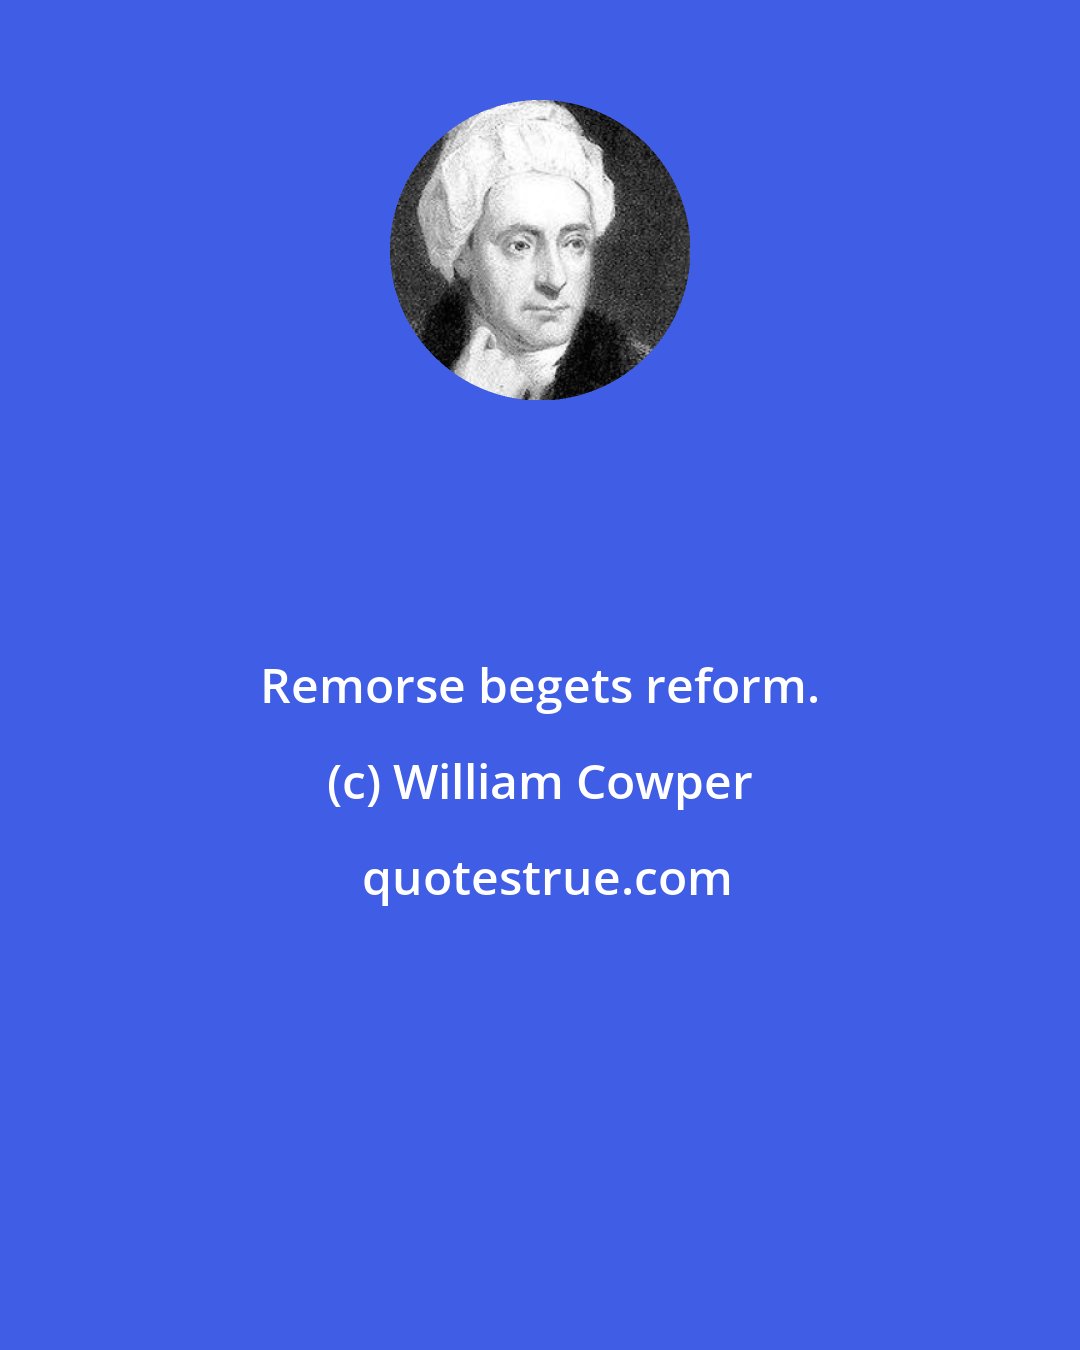 William Cowper: Remorse begets reform.